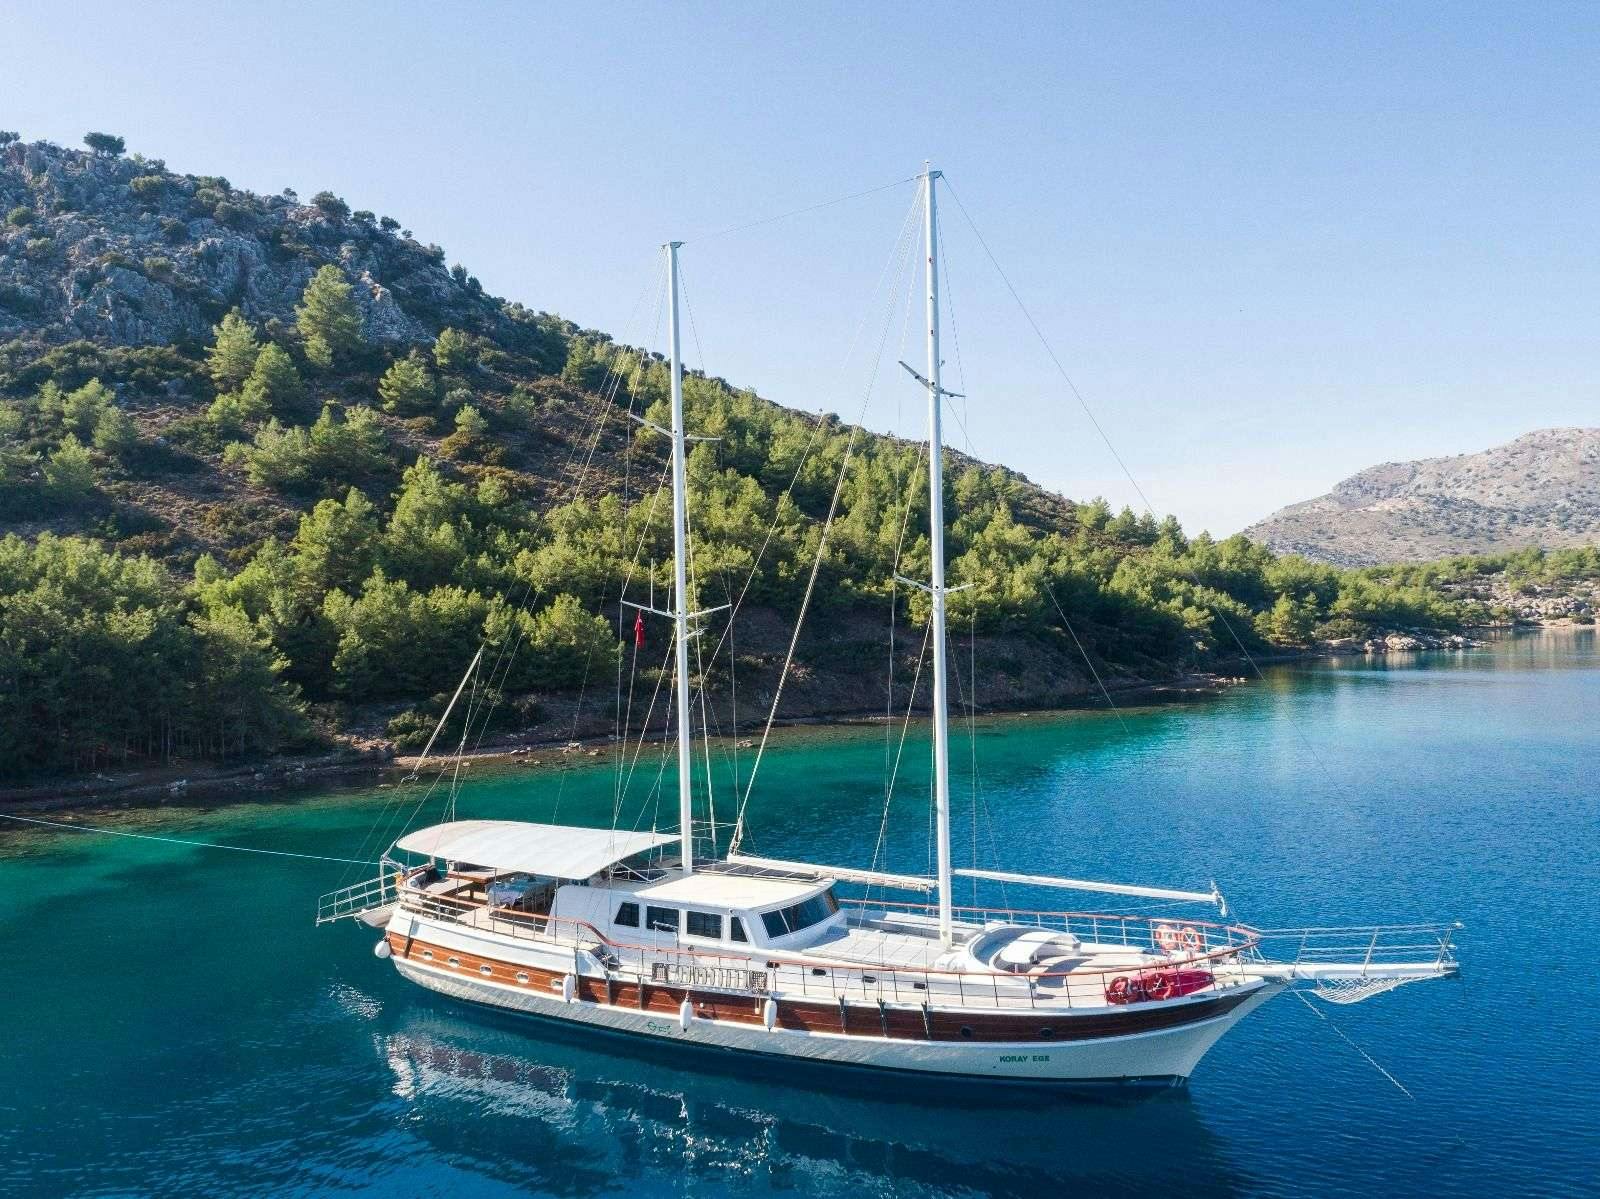 koray ege - Motor Boat Charter worldwide & Boat hire in Greece & Turkey 1